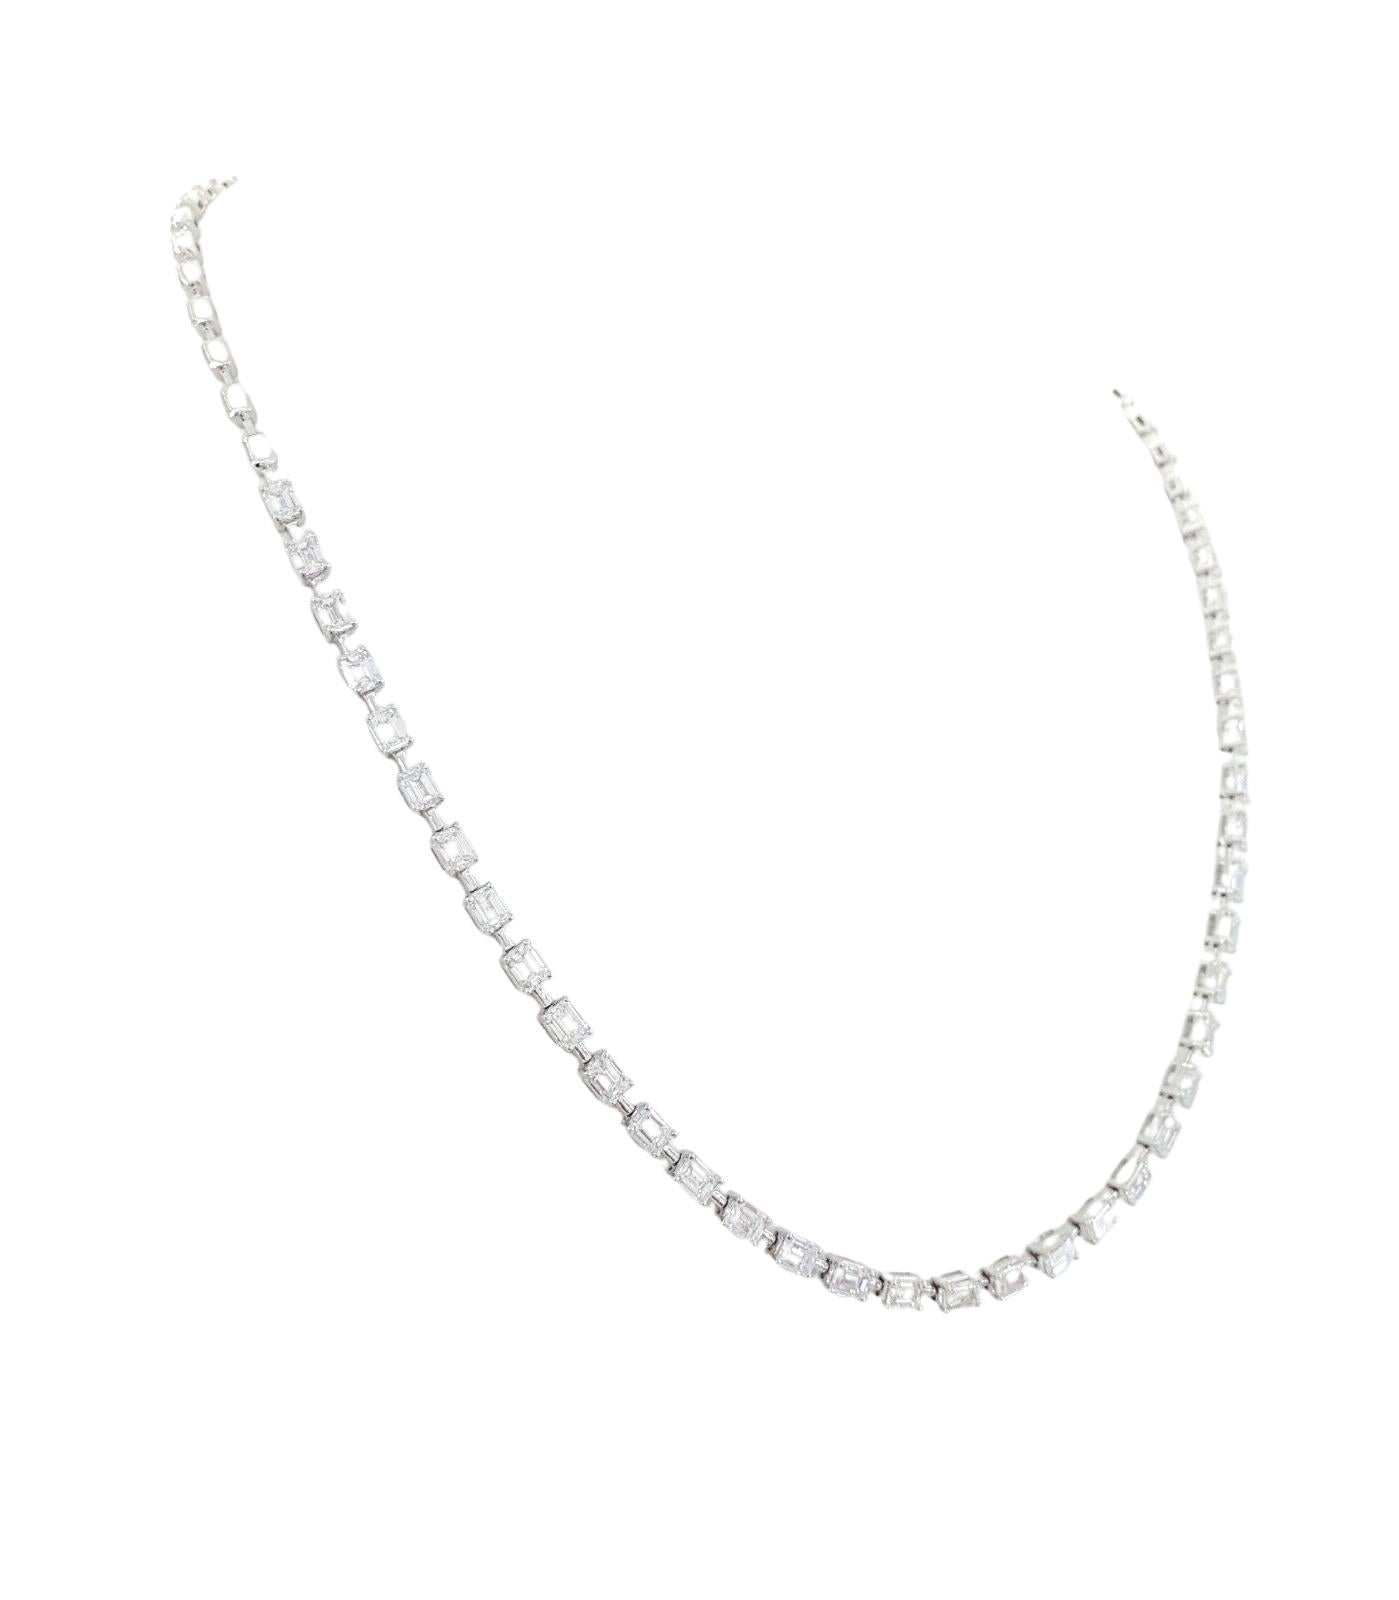 7.0 ct Emerald Brilliant Cut Diamond Line Necklace 14k White Gold 17